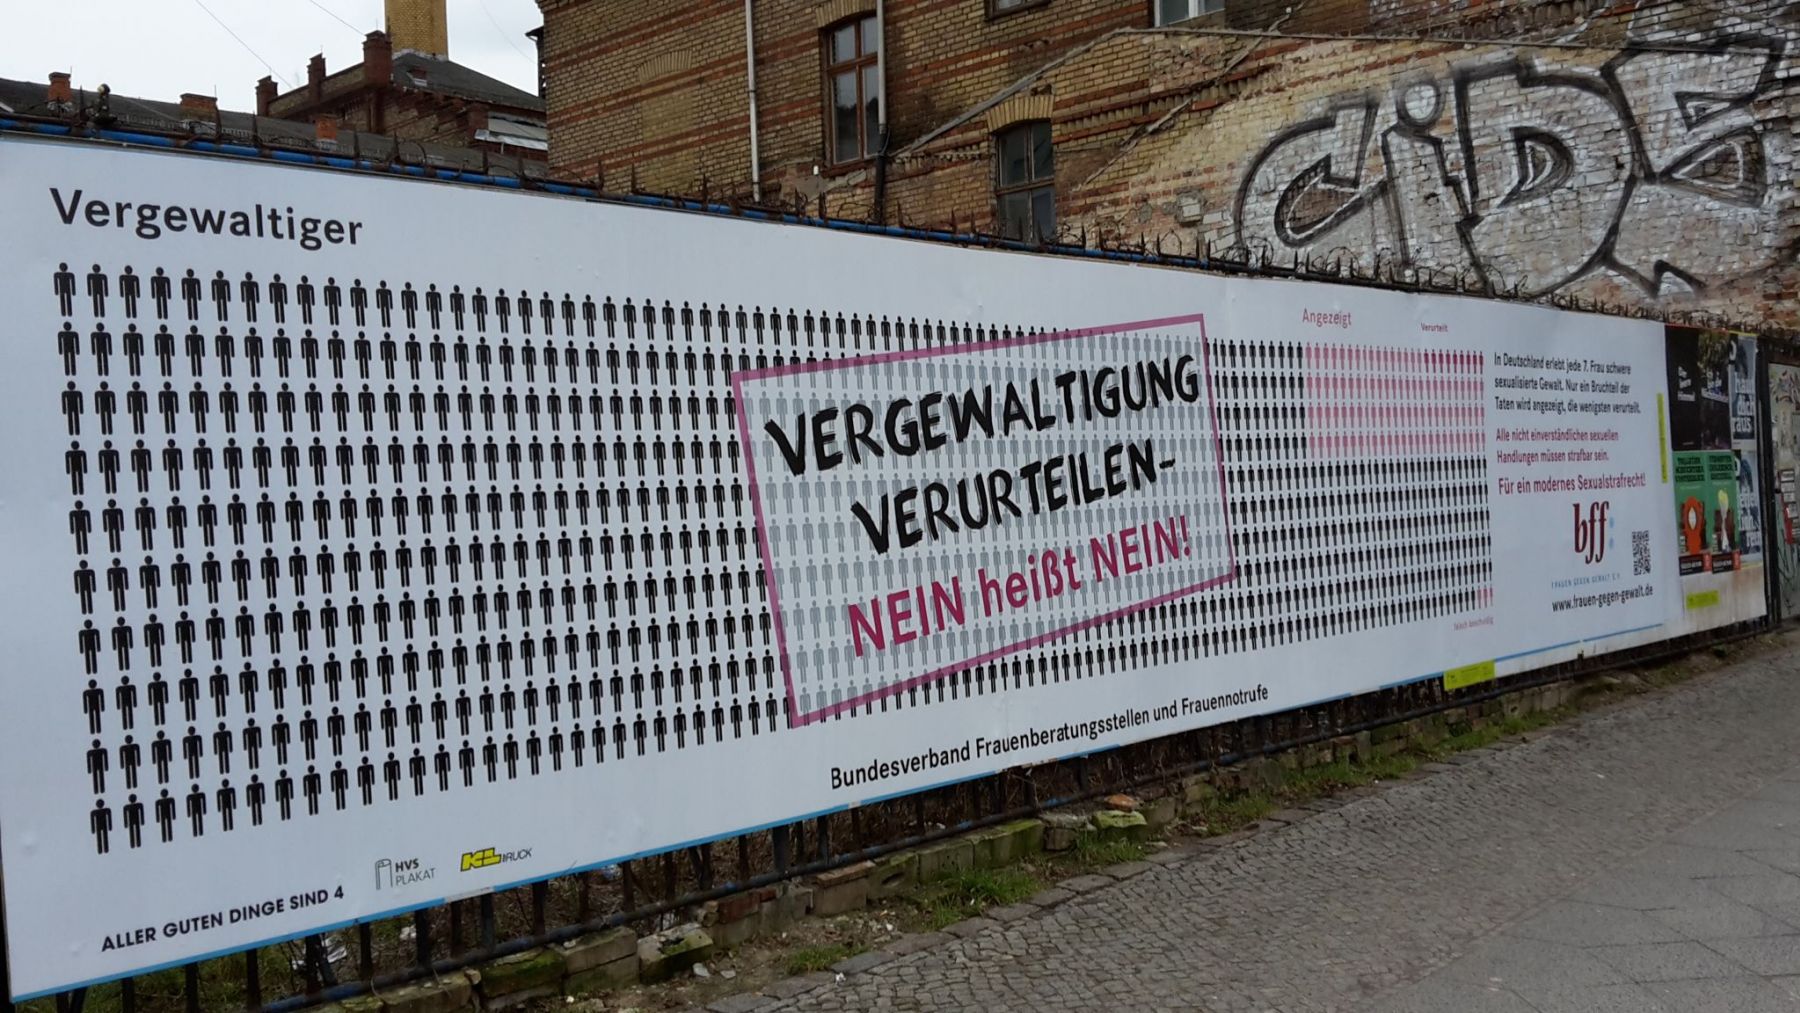 Foto von einem "Vergewaltigung verurteilen - Nein heißt Nein!"-Banner in Berlin